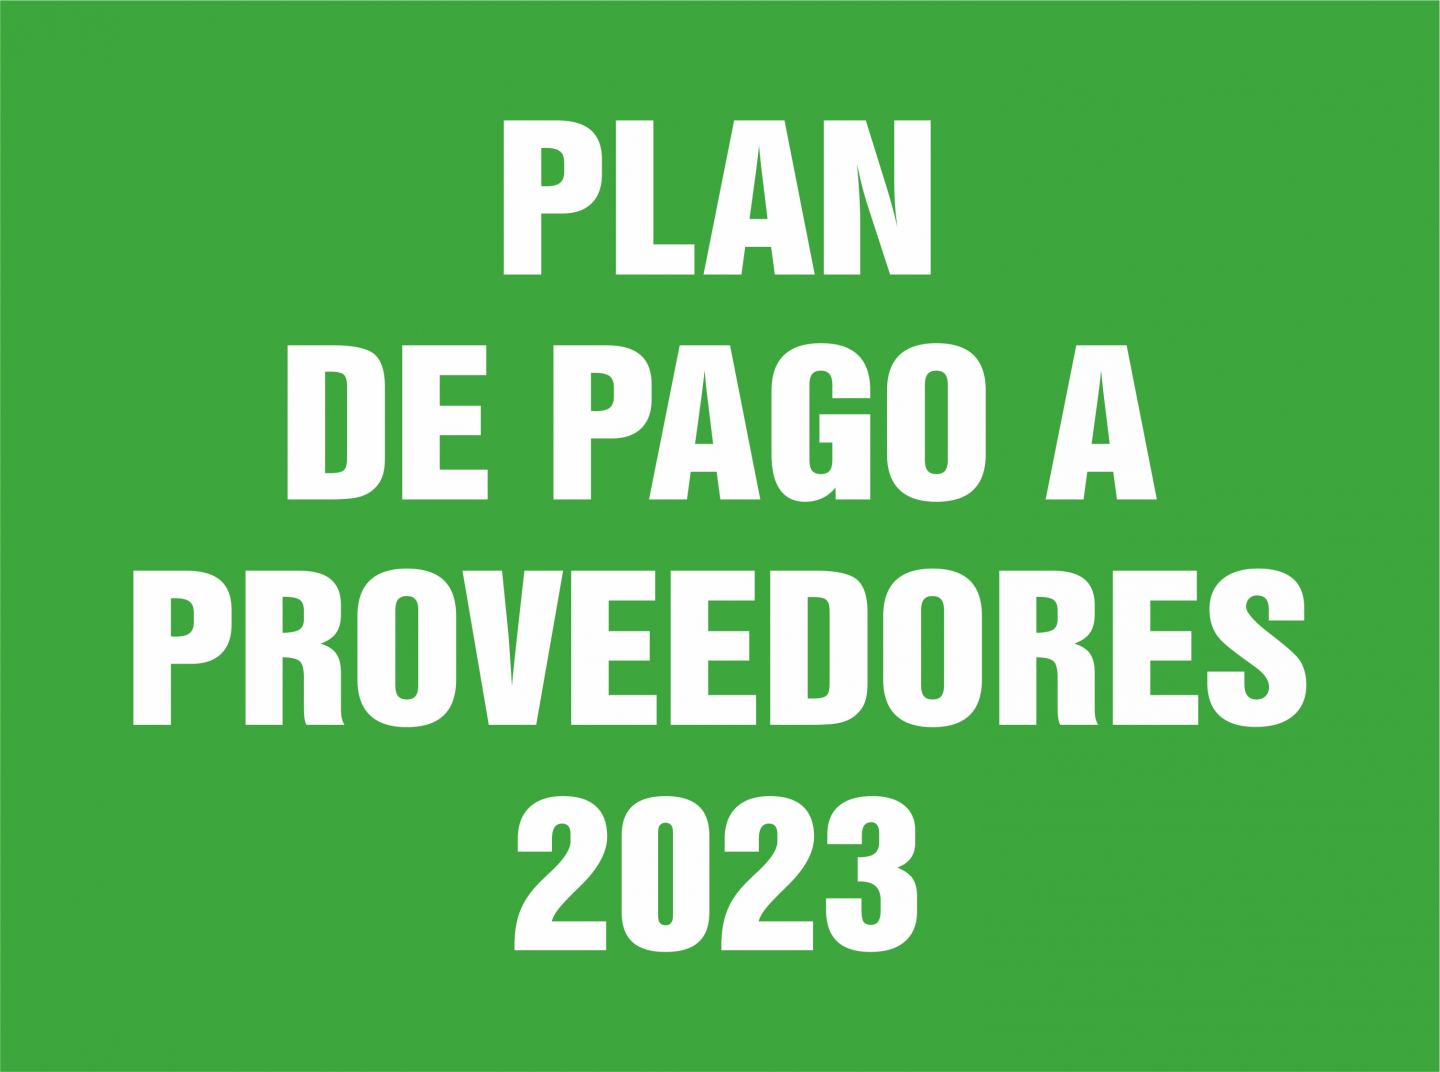 PLAN DE PAGO A PROVEEDORES 2023